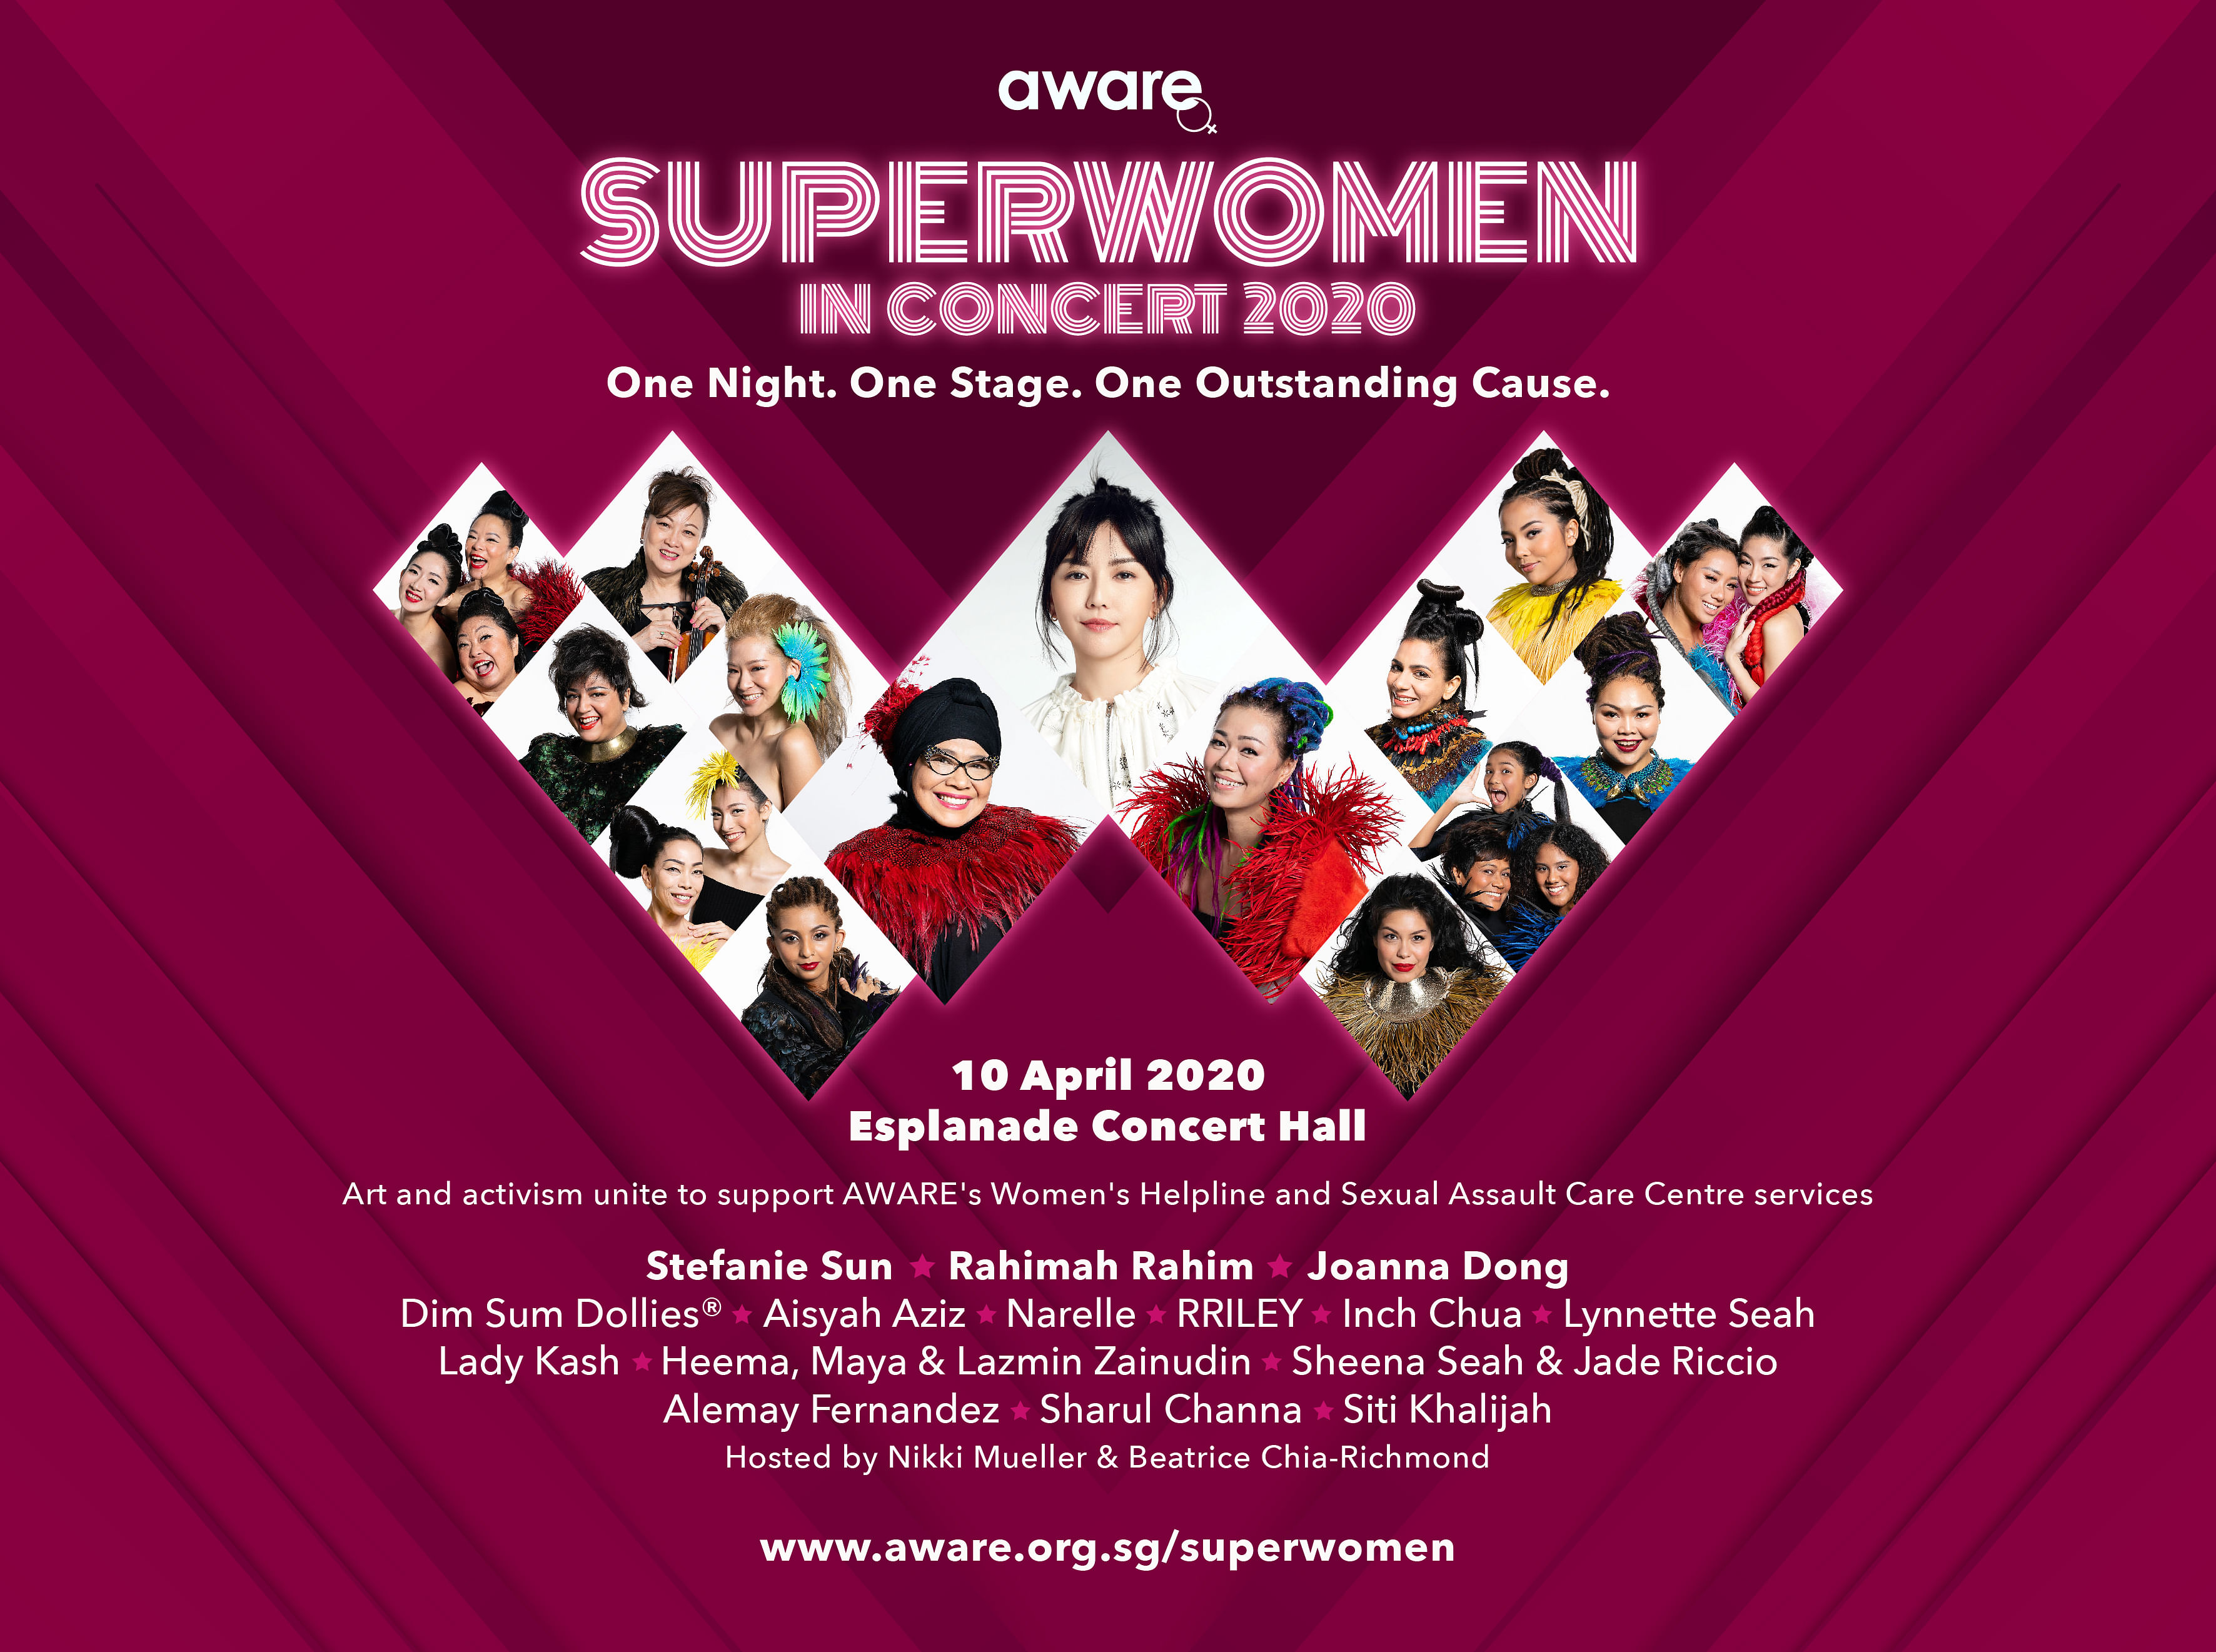 AWARE's Superwomen in Concert 2020